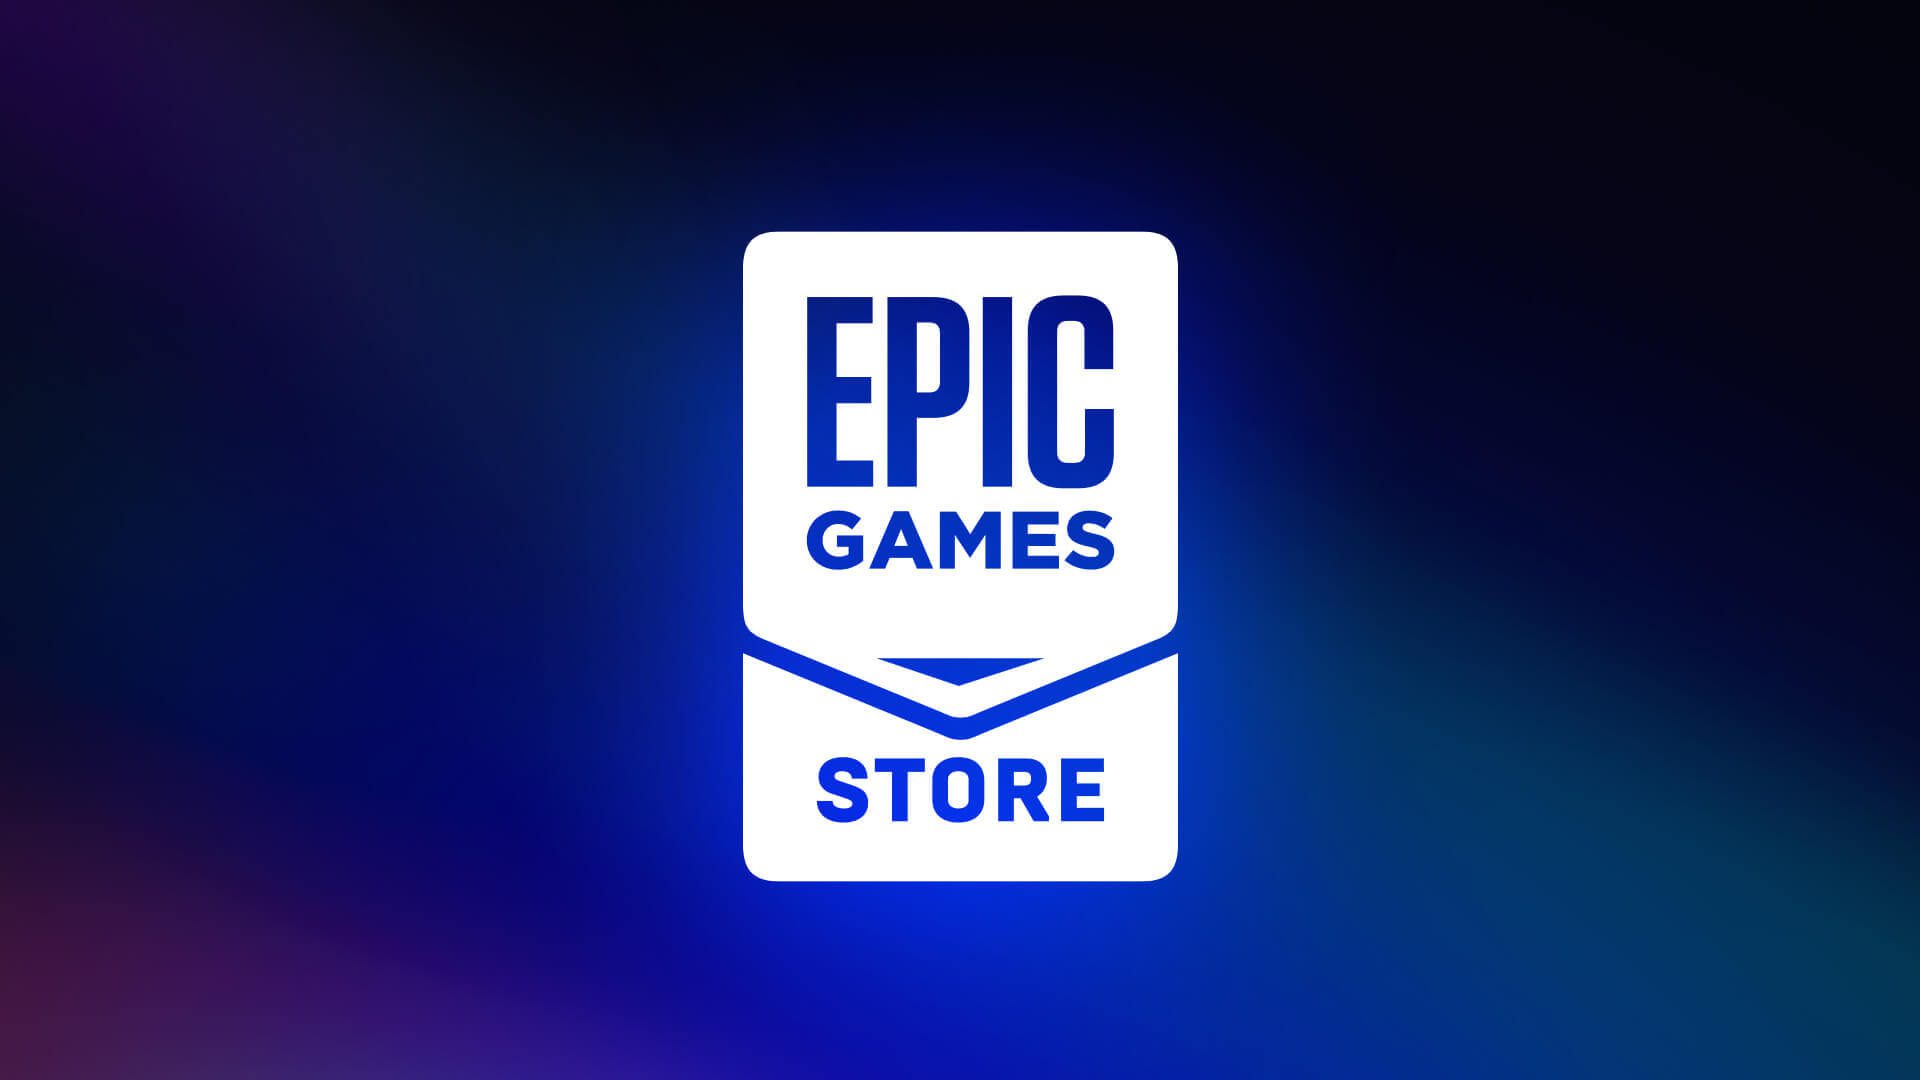 A Riot Games traz League of Legends, VALORANT e muito mais para a Epic  Games Store - Epic Games Store